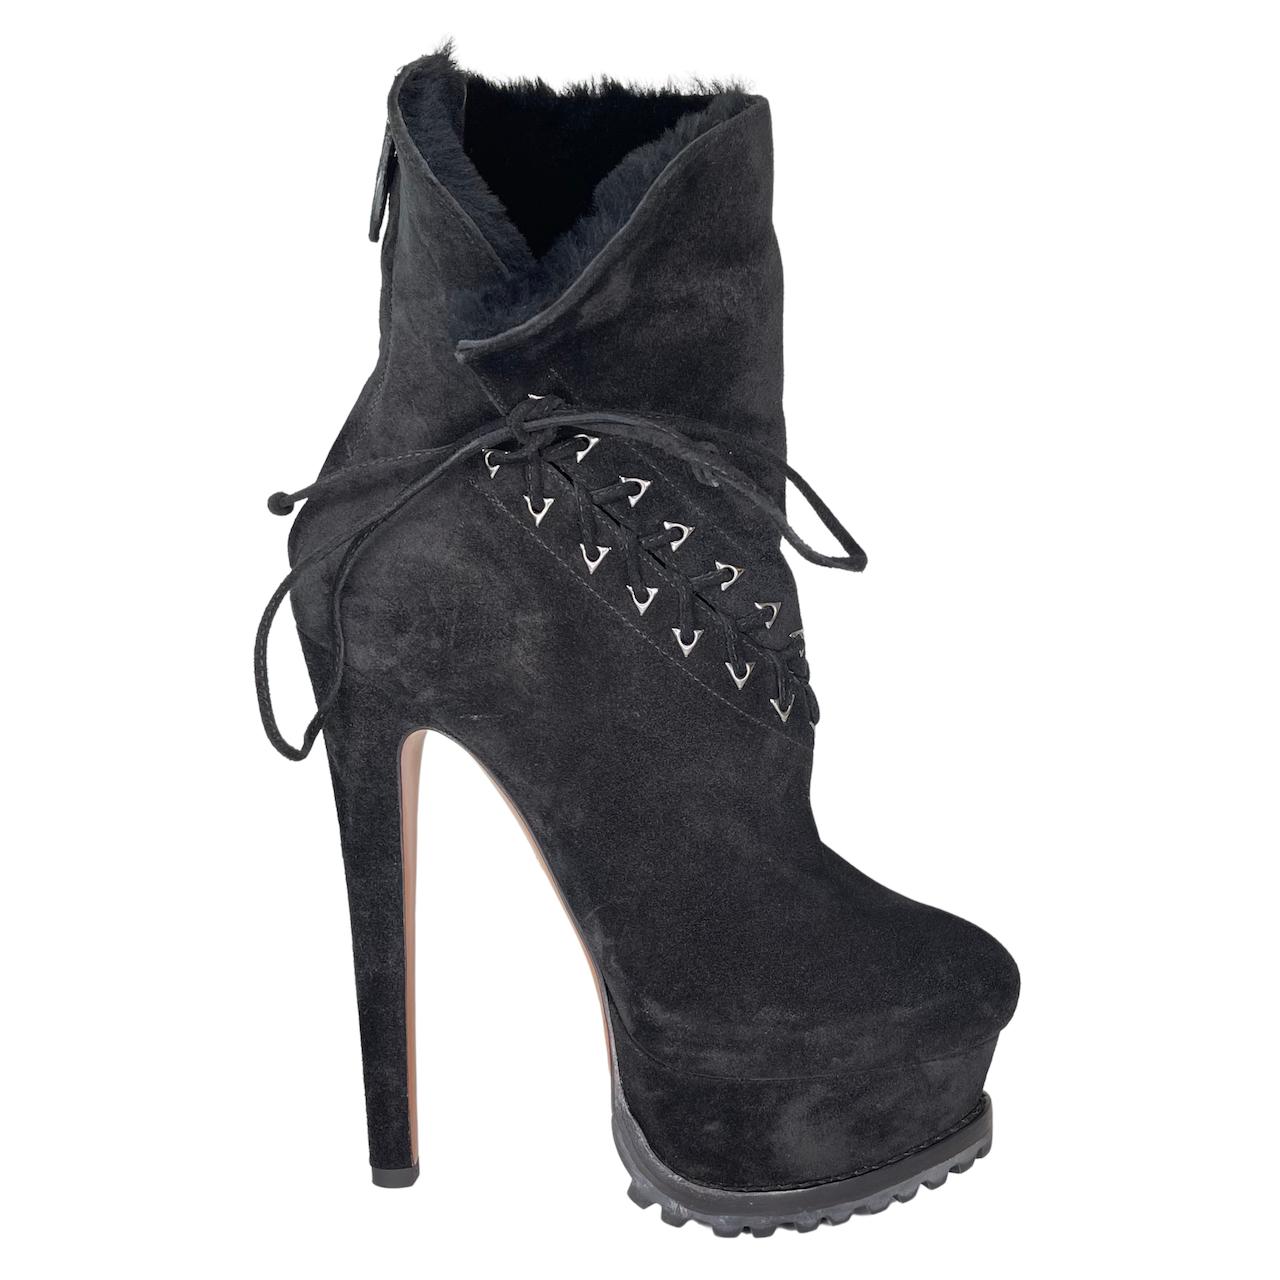 Alaia Black Suede Platform Hiking Boots (38.5 EU) Ariana Grande